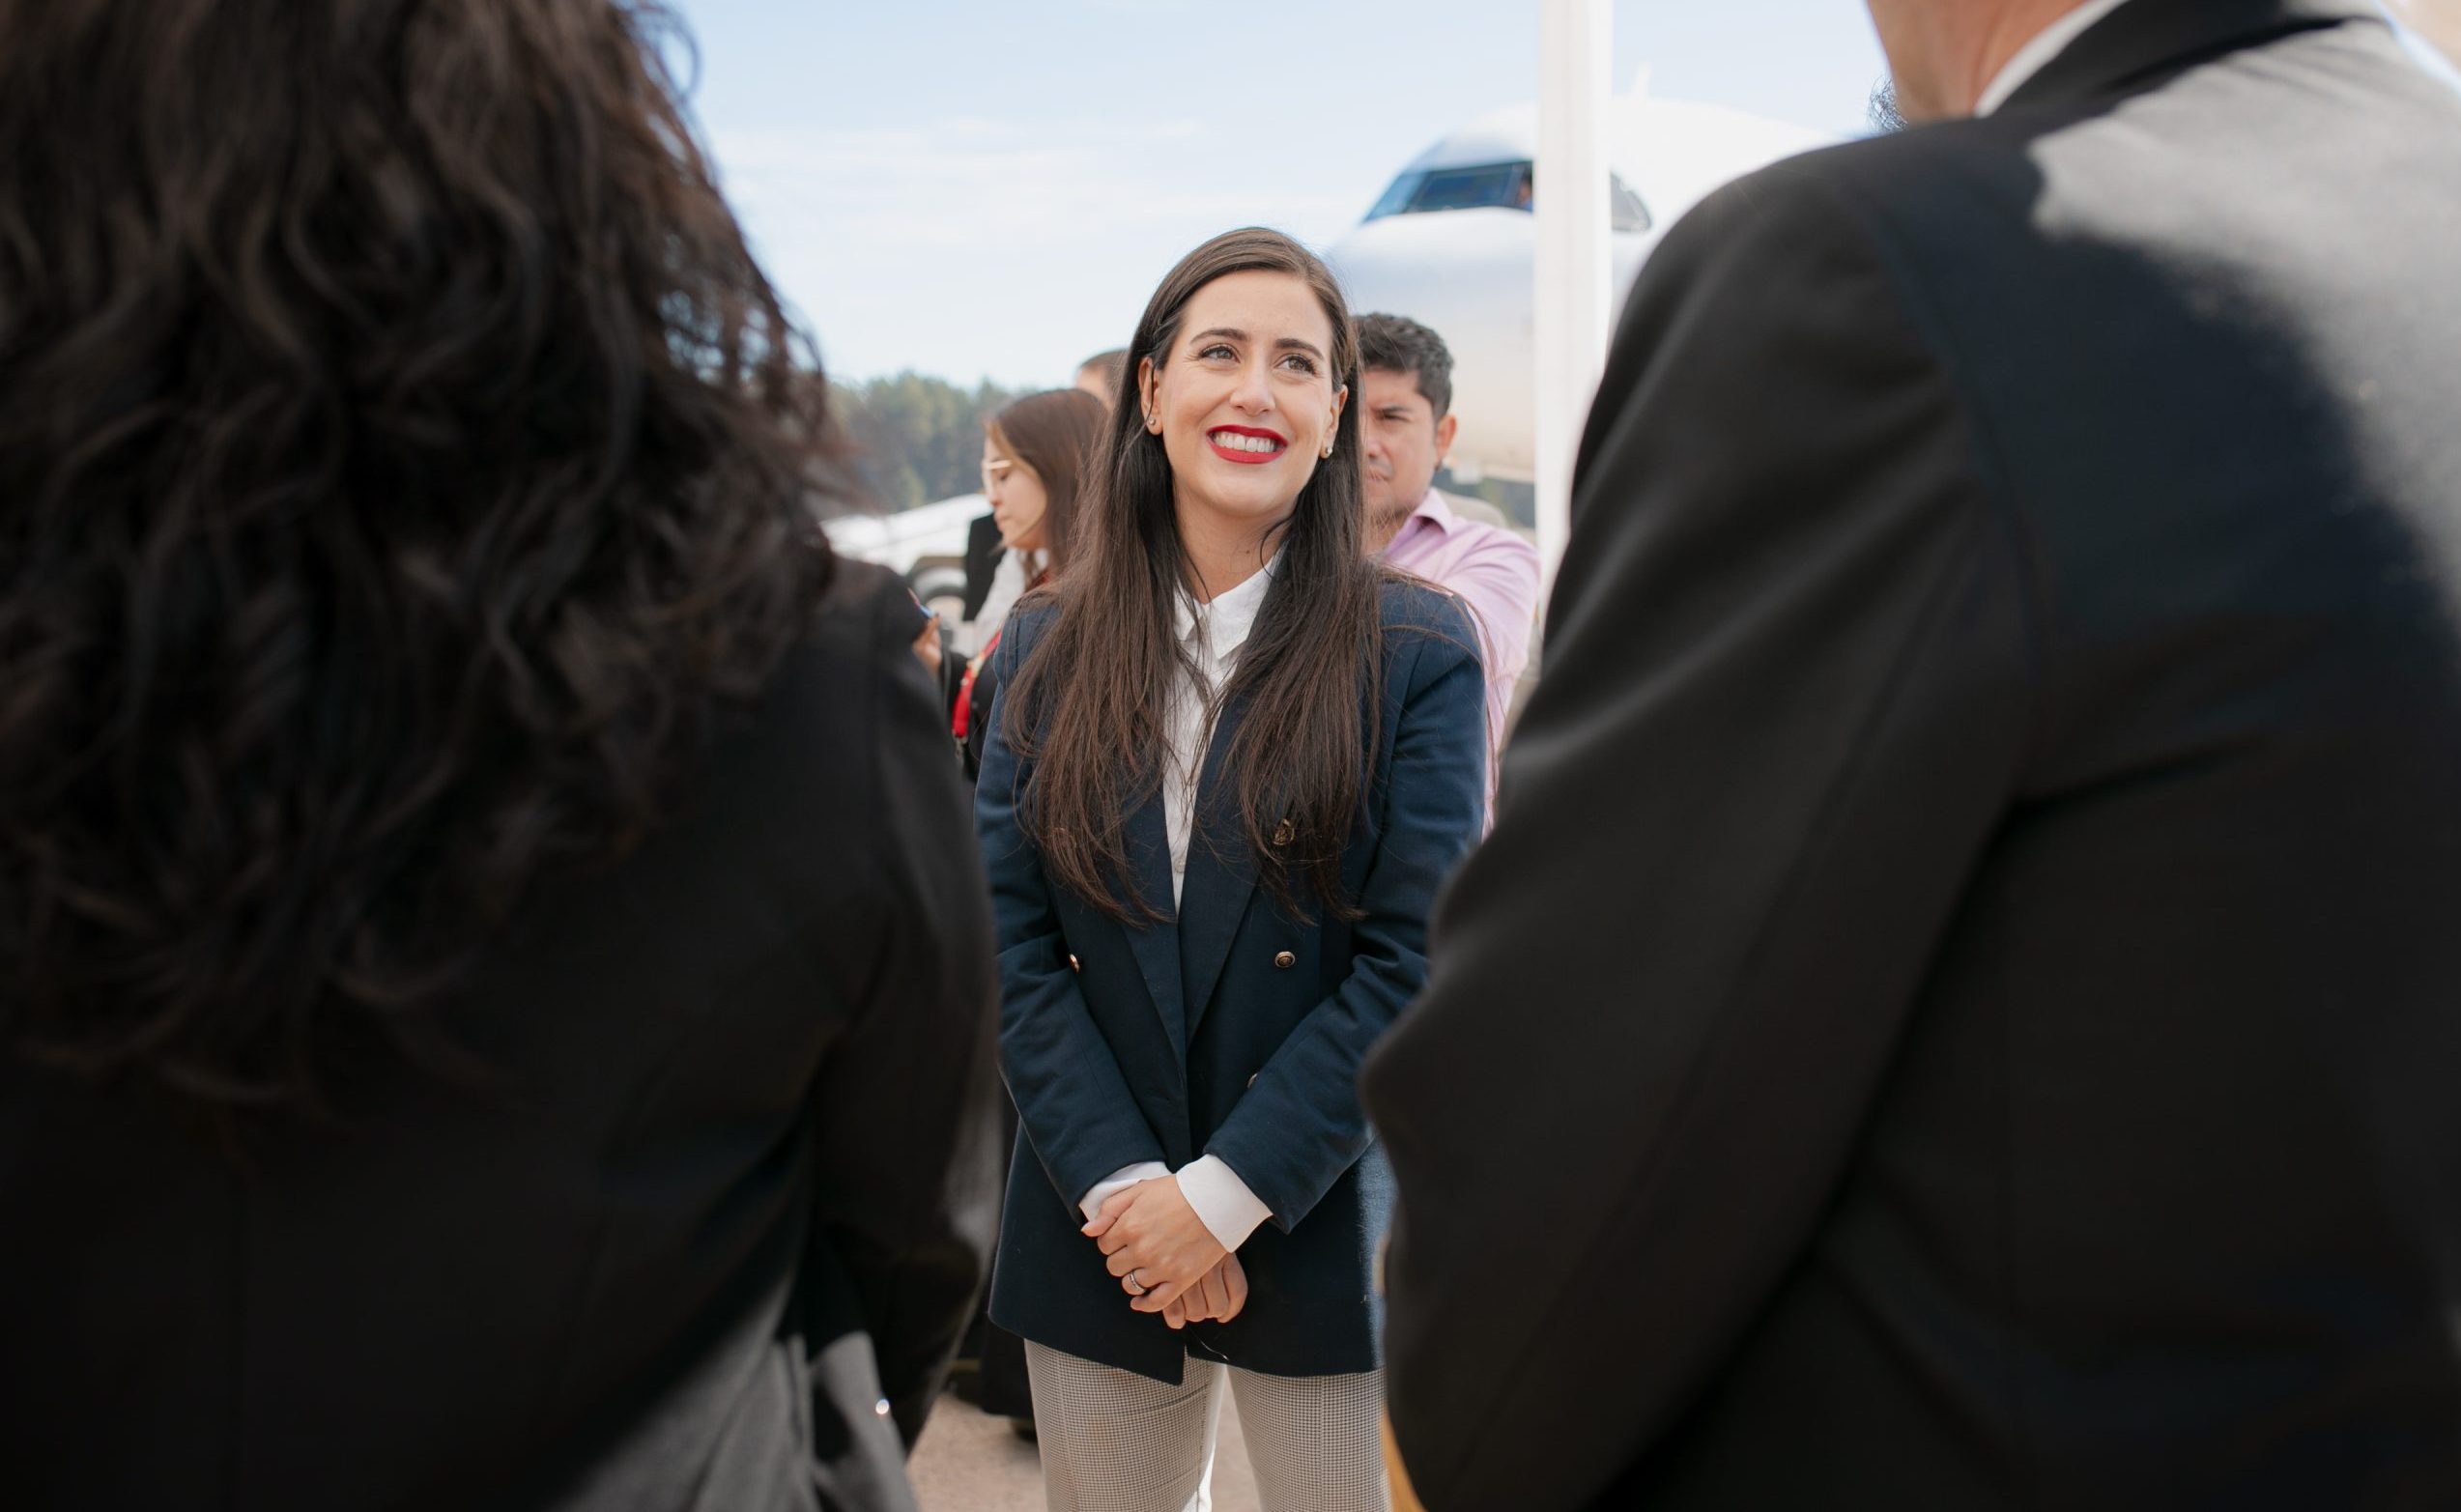 Alcaldesa Ripamonti por esperado anuncio de Aeropuerto de Viña del Mar: “Esperamos que reactive y dinamice la economía de la comuna”